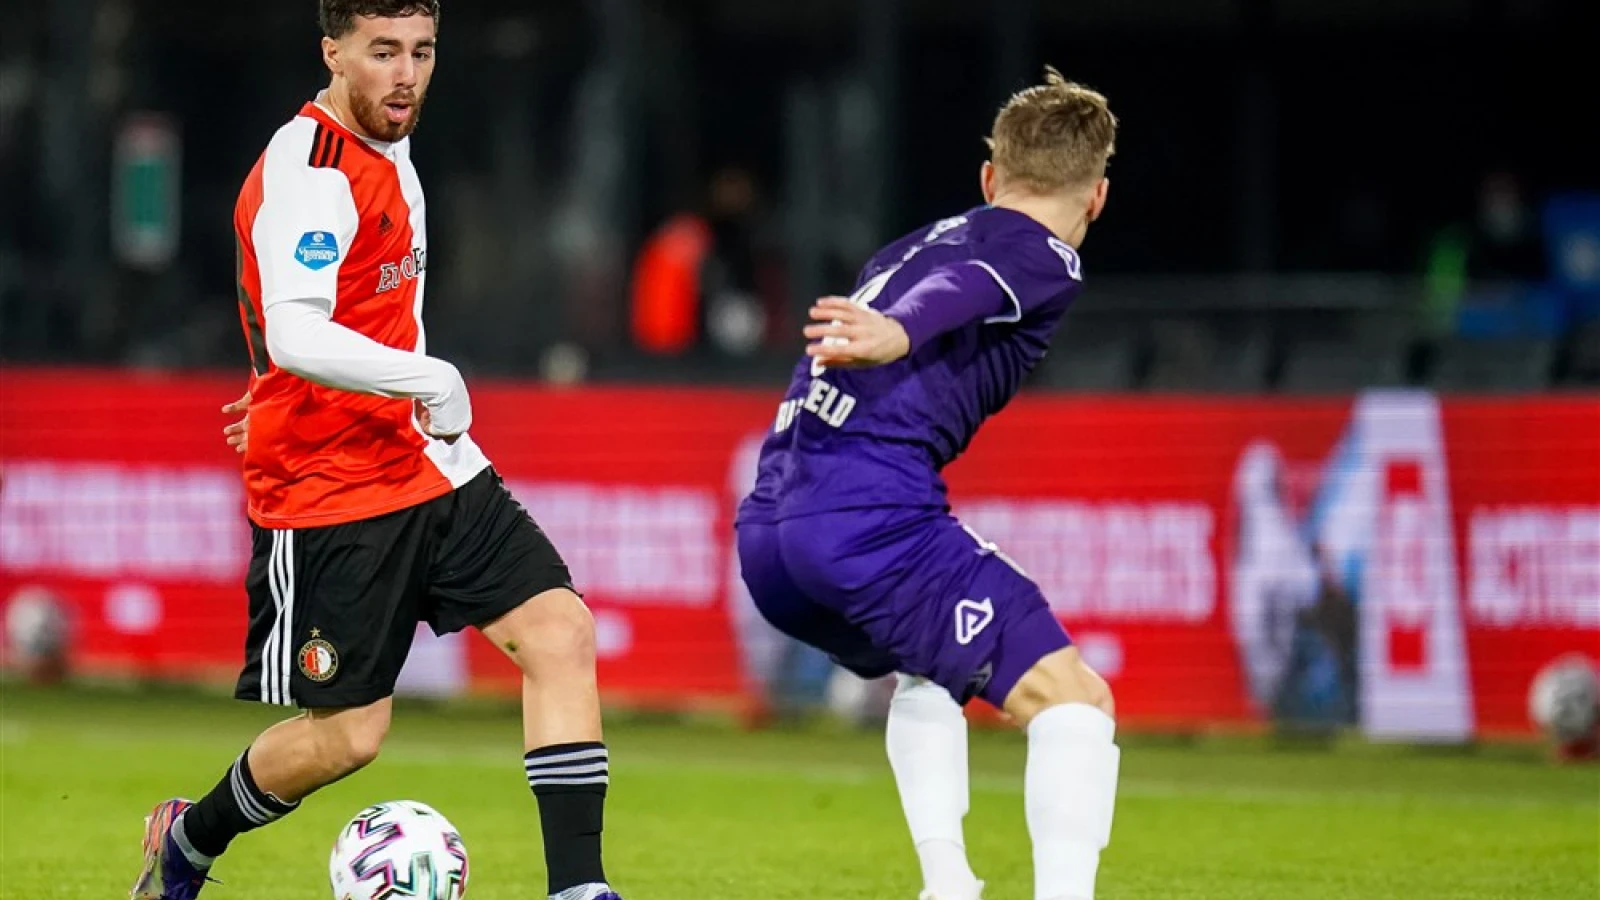 LIVE | Feyenoord - Heracles Almelo 3-2 | Einde wedstrijd